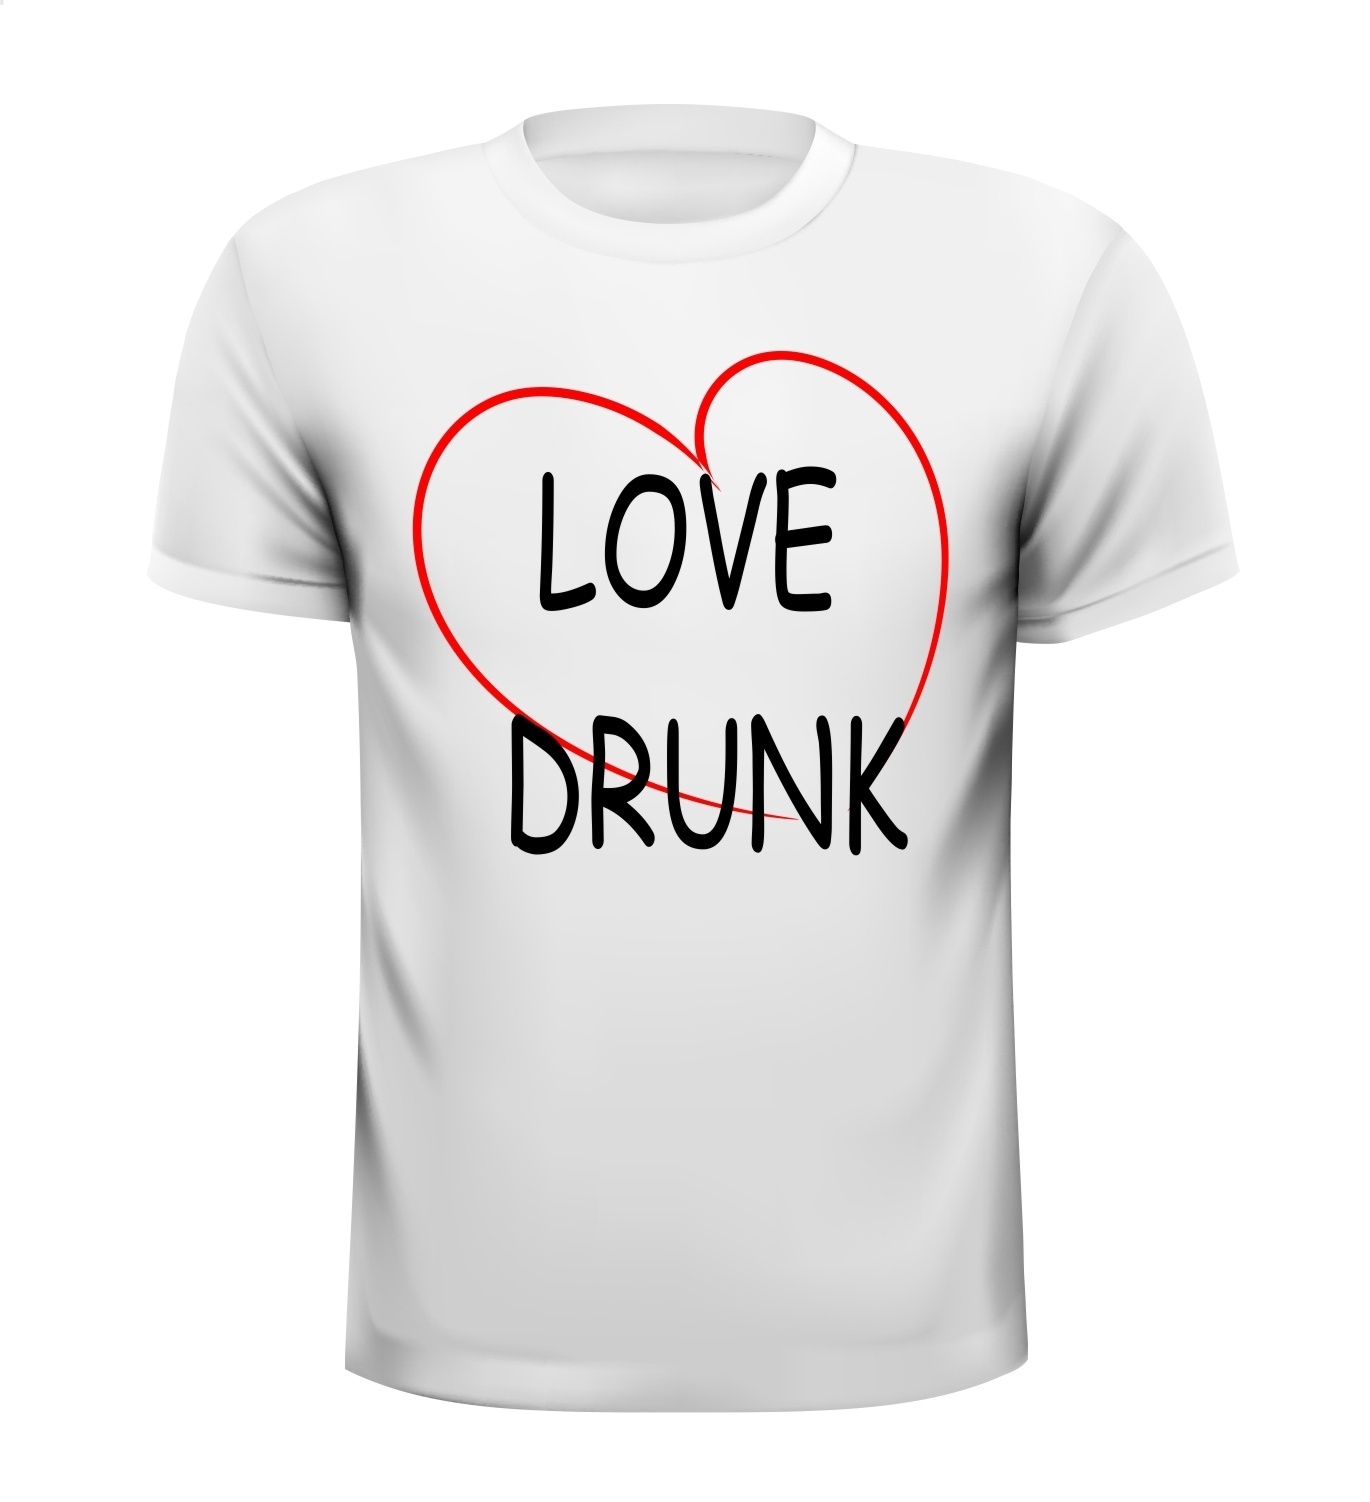 Love drunk shirt